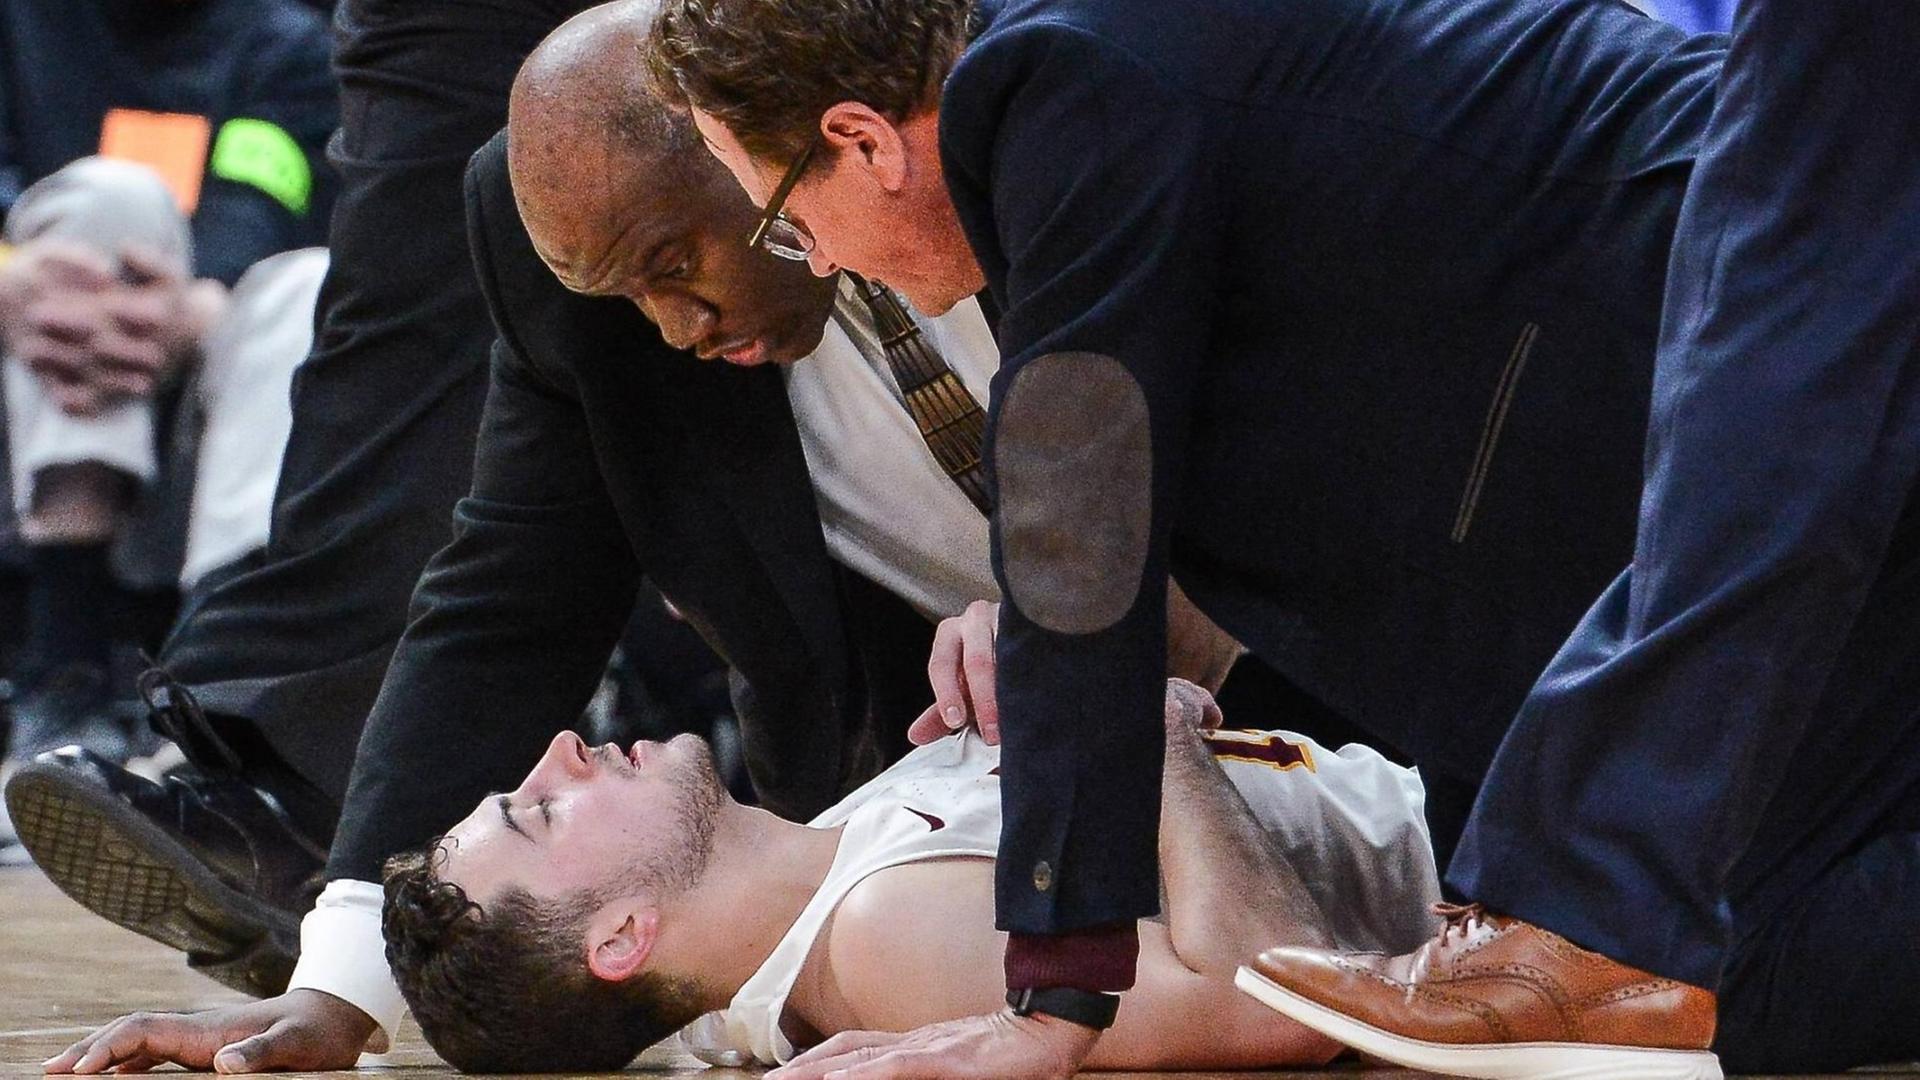 Die Trainer des College-Basketballer Ben Richardson von der Loyola University Chicago reden vehement auf ihren verletzten Schützling ein.